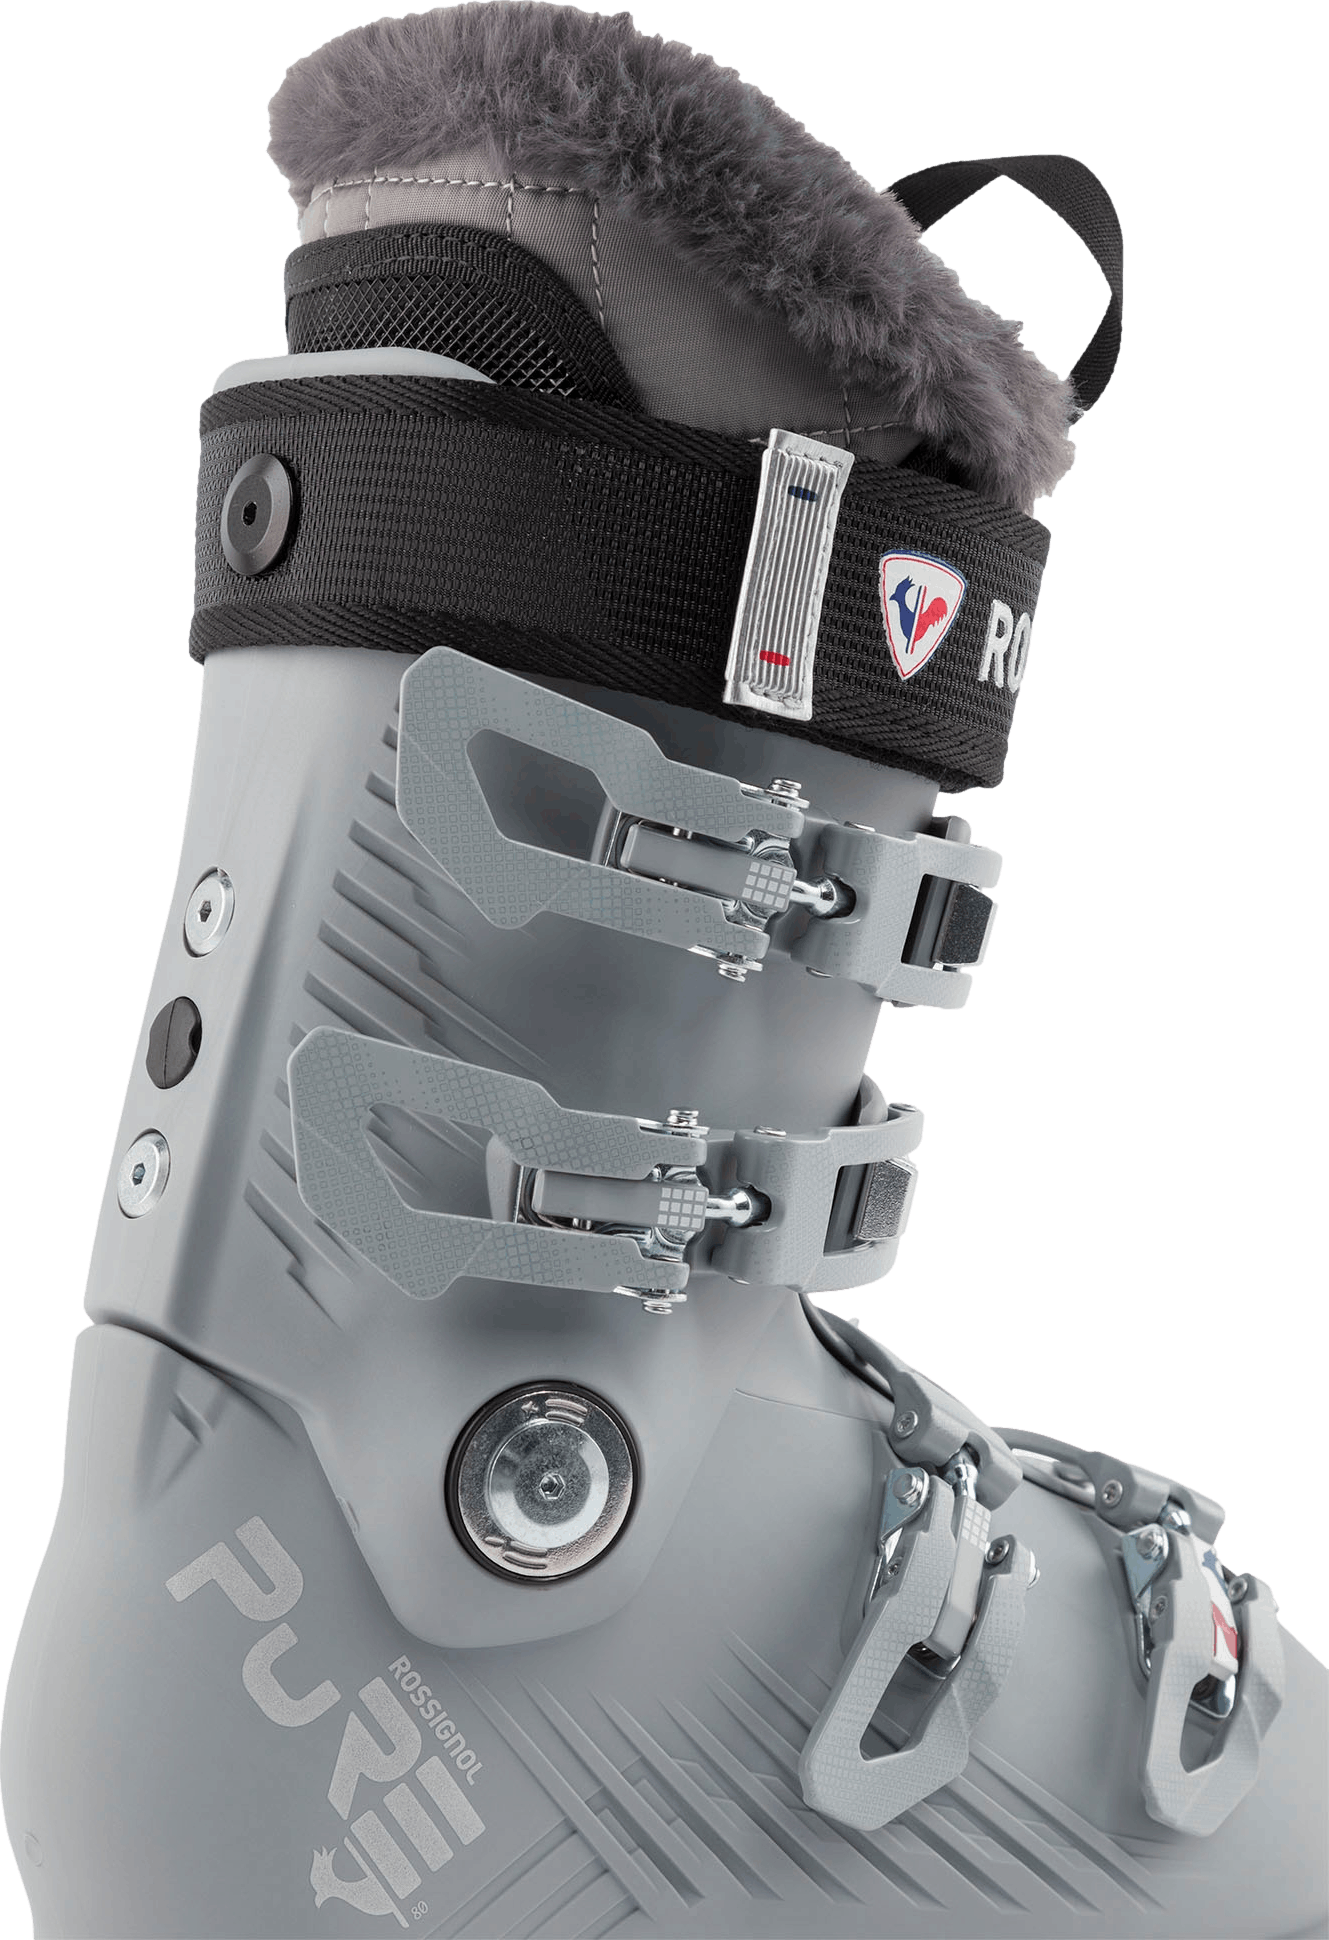 Rossignol Pure 80 Ski Boots · Women's · 2024 · 23.5